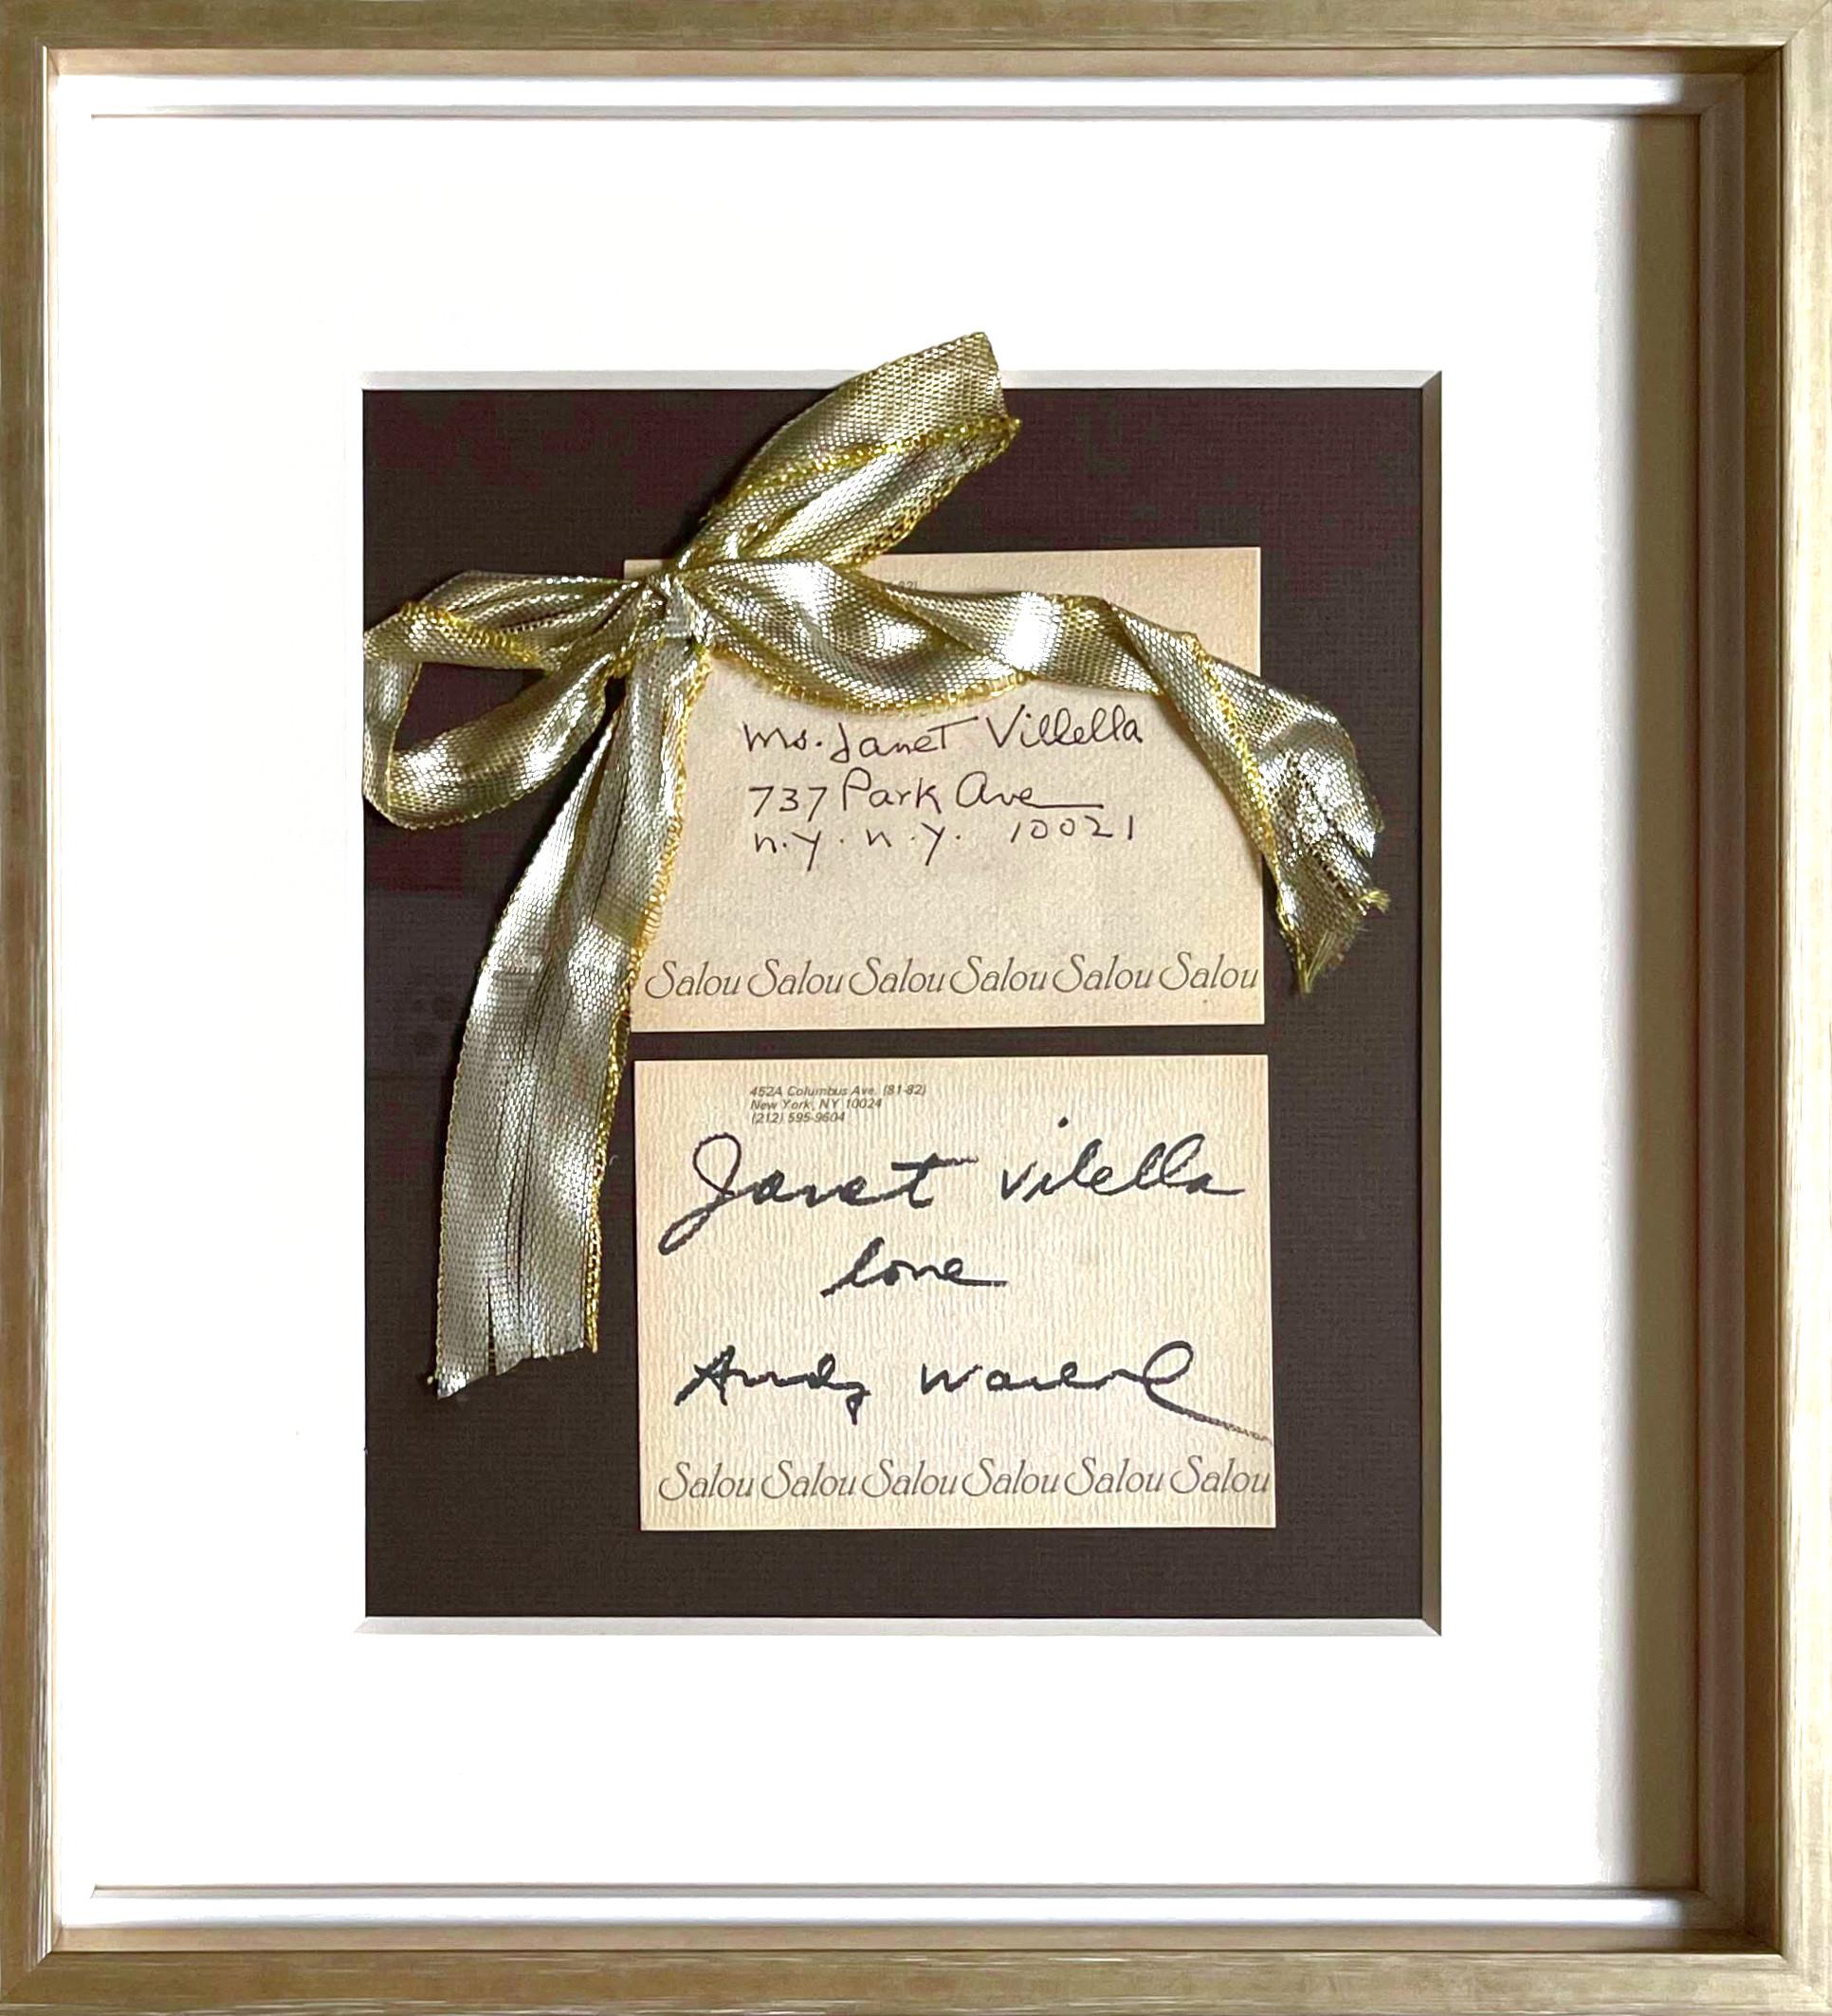 Un cadeau unique et mémorable ! Qui ne voudrait pas d'une carte avec un ruban où l'on peut lire "Love, Andy Warhol" - de la part de Warhol lui-même ? 

Andy Warhol
Amour, Andy Warhol, vers 1979
Encre sur carte avec noeud et enveloppe manuscrite